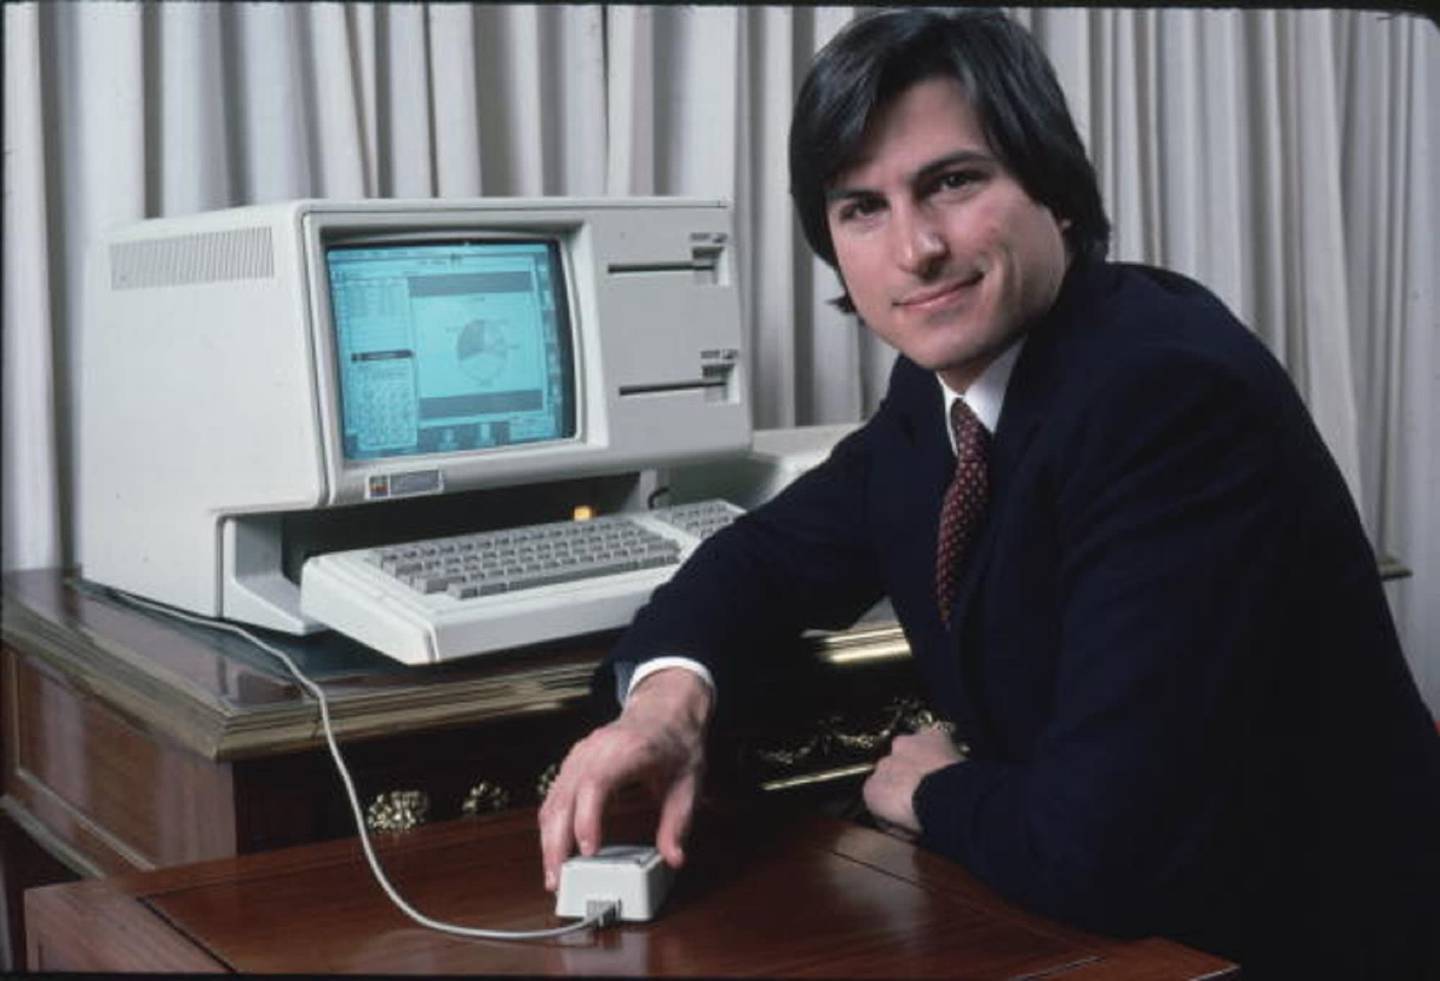 Repasamos un pasaje curioso en la trayectoria profesional de Steve Jobs: cuando obligó a los ingenieros que la Apple Macintosh arrancara más rápido.